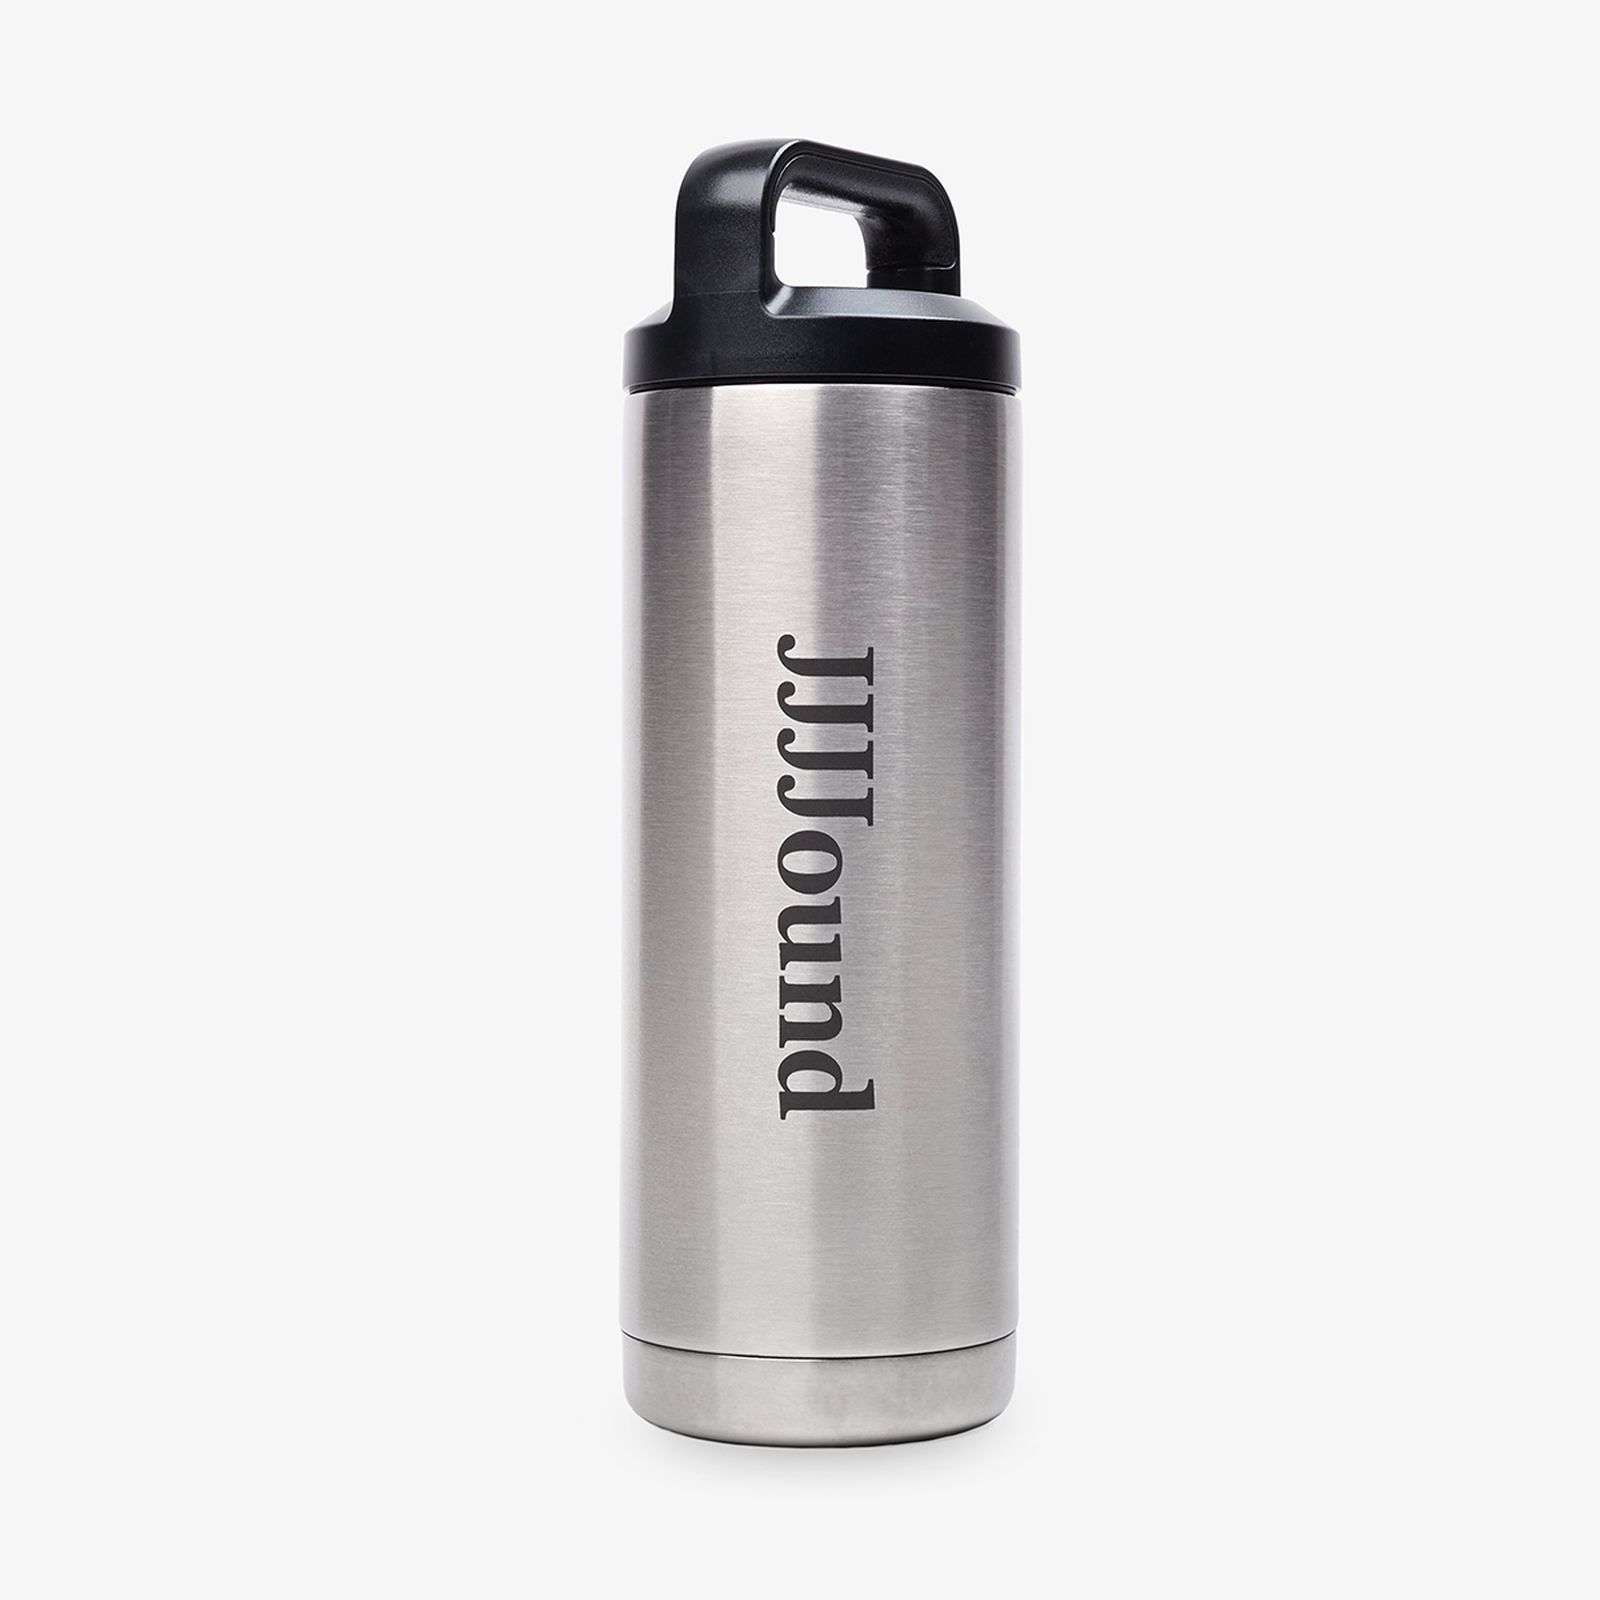 JJJJound Releases Reusable Water Bottles: Buy Them Here